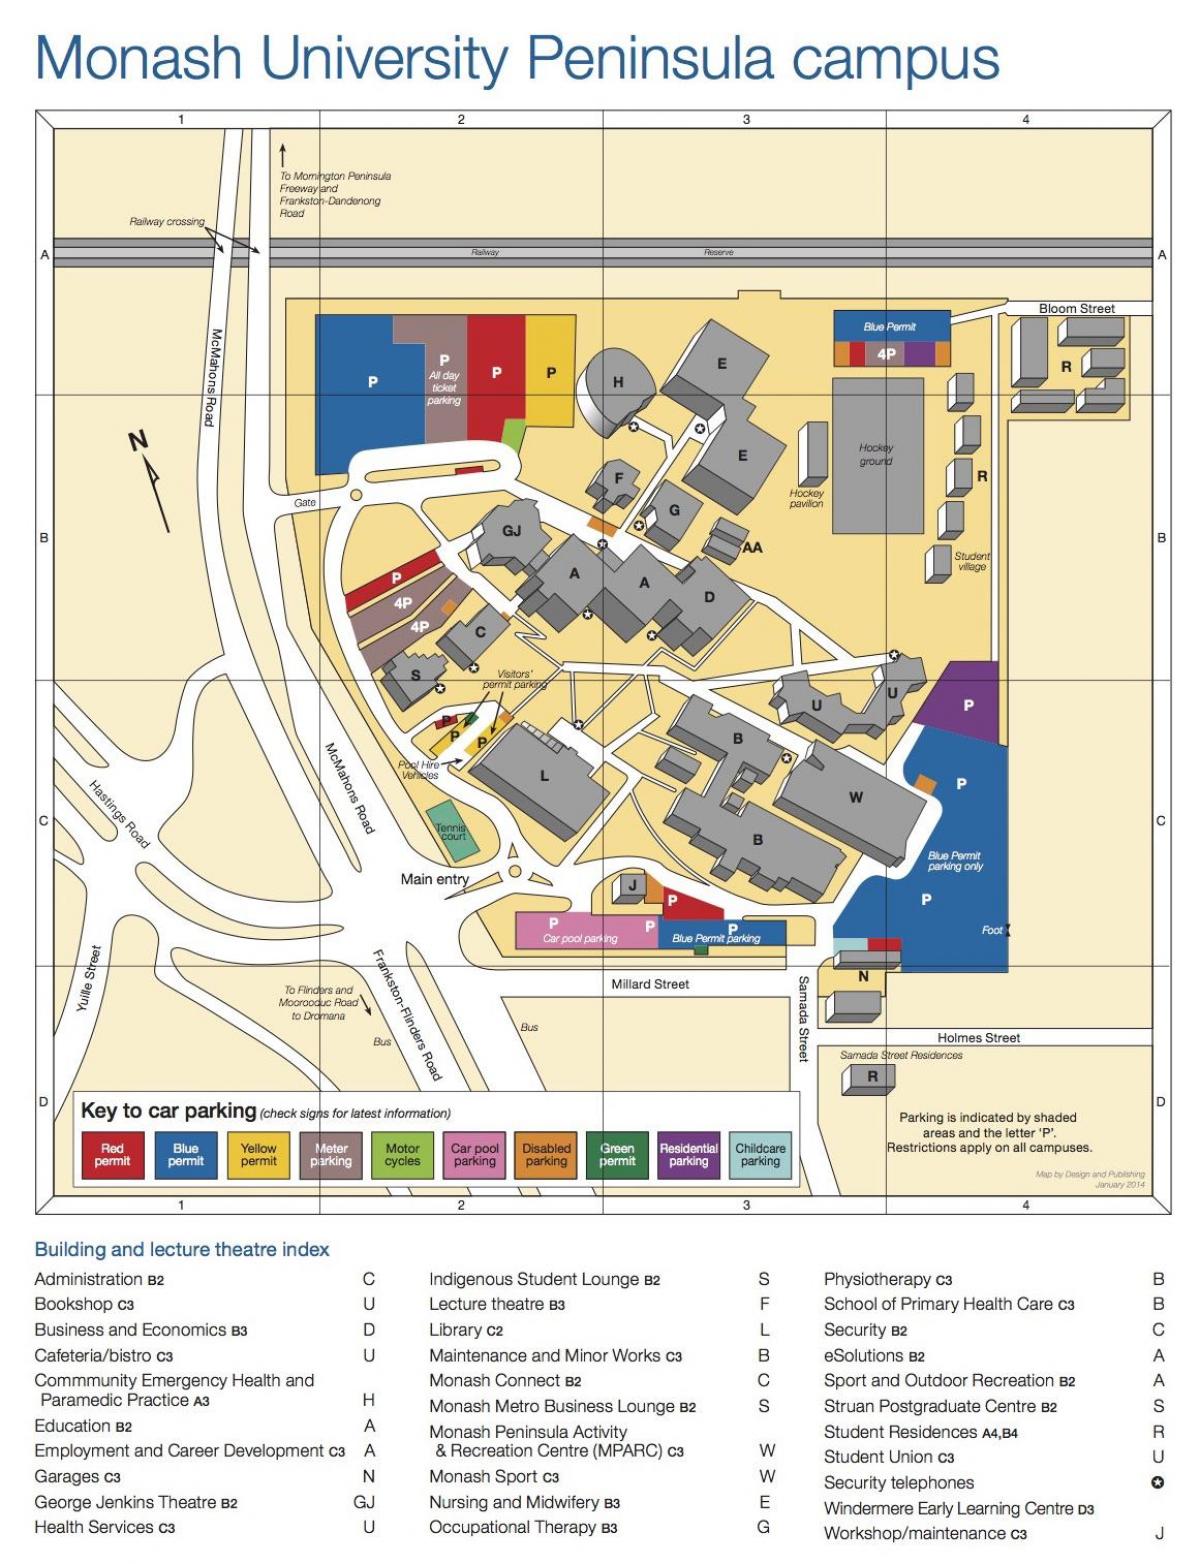 Монаш карту кампуса университета